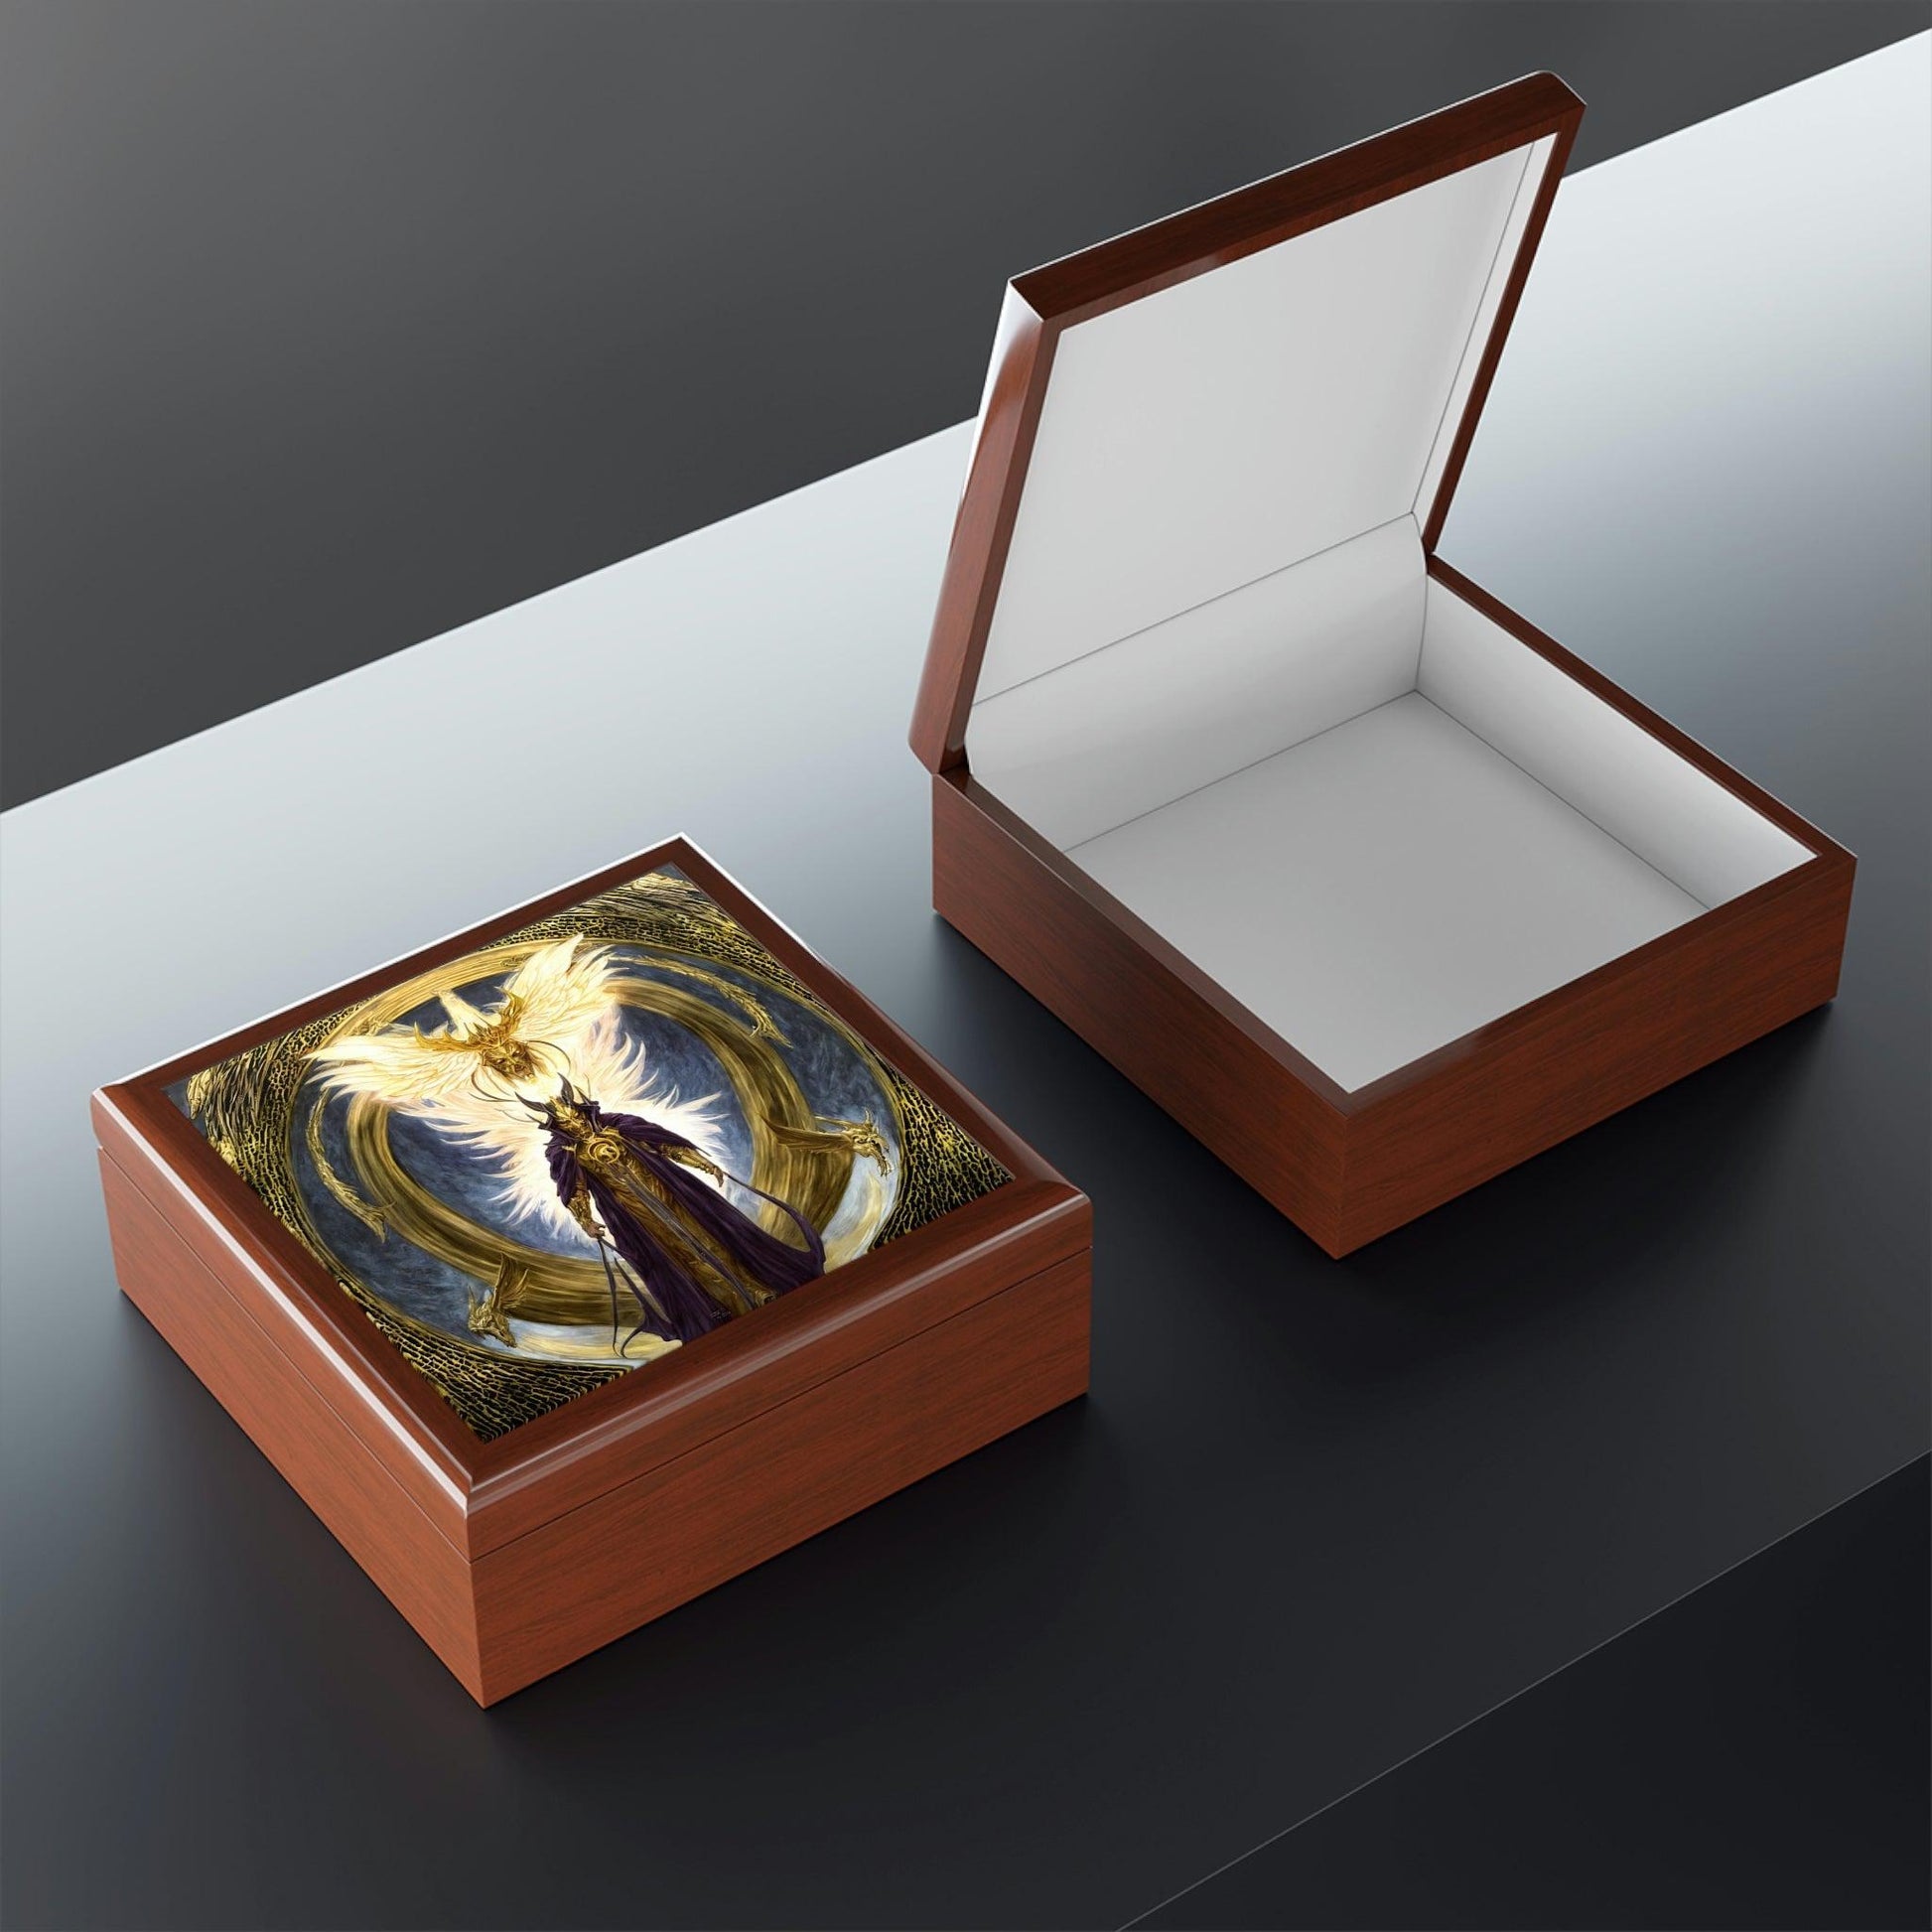 Lucifers-Jewelry-Box-untuk-menyimpan-azimat-dan-cincin-6